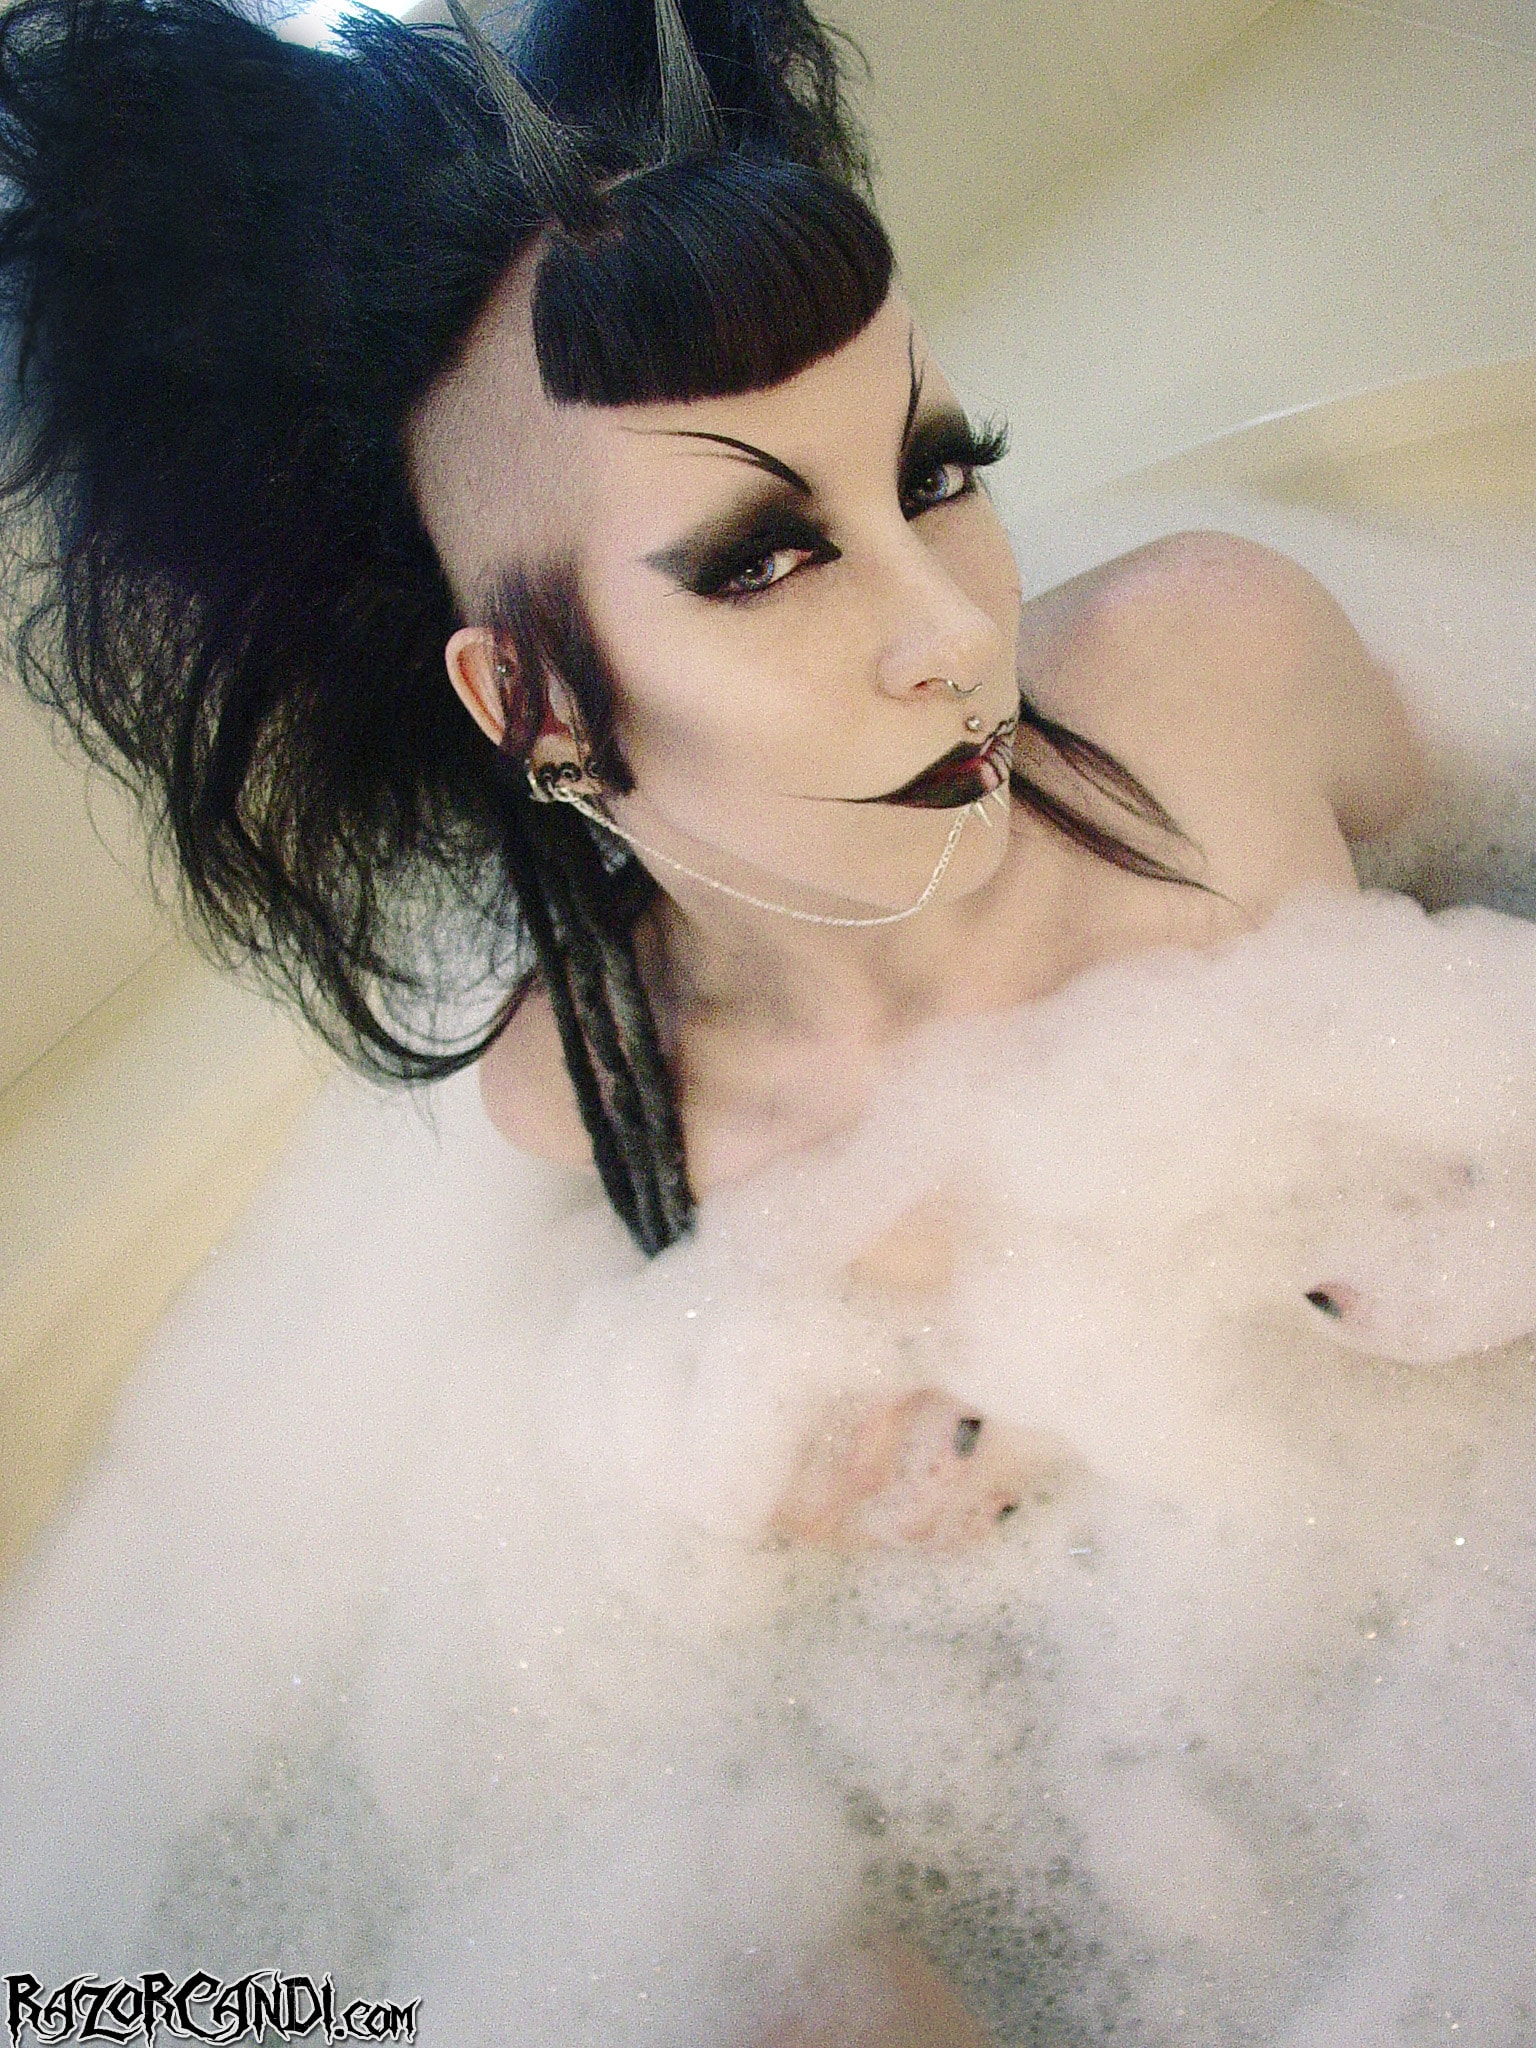 Razor Candi - Classic Gothic Deathrock Beauty in Bubble Bath | Picture (7)